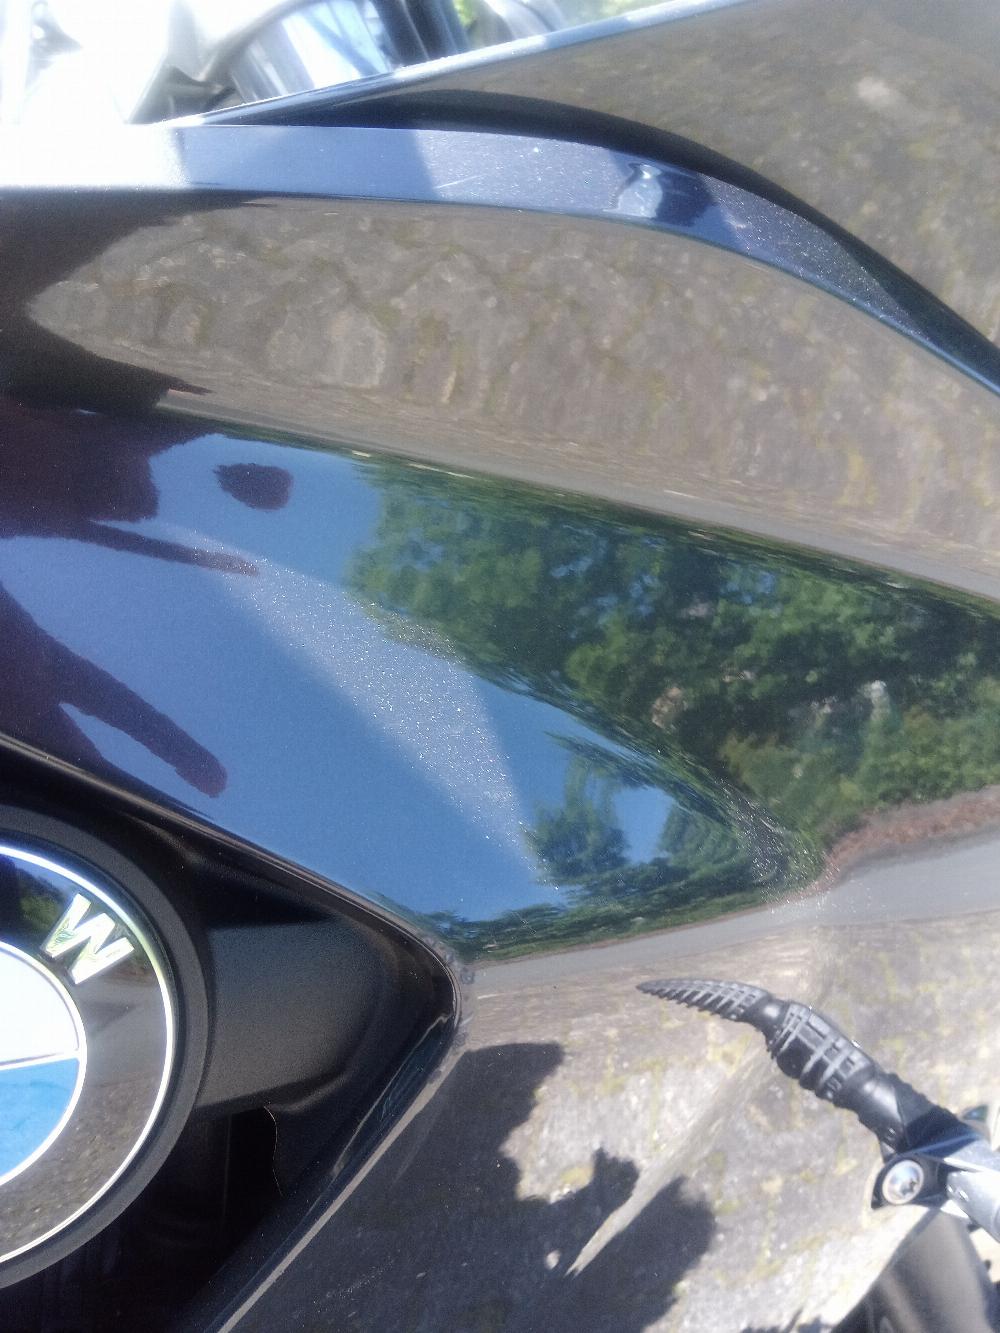 Motorrad verkaufen BMW F 800 GT Ankauf